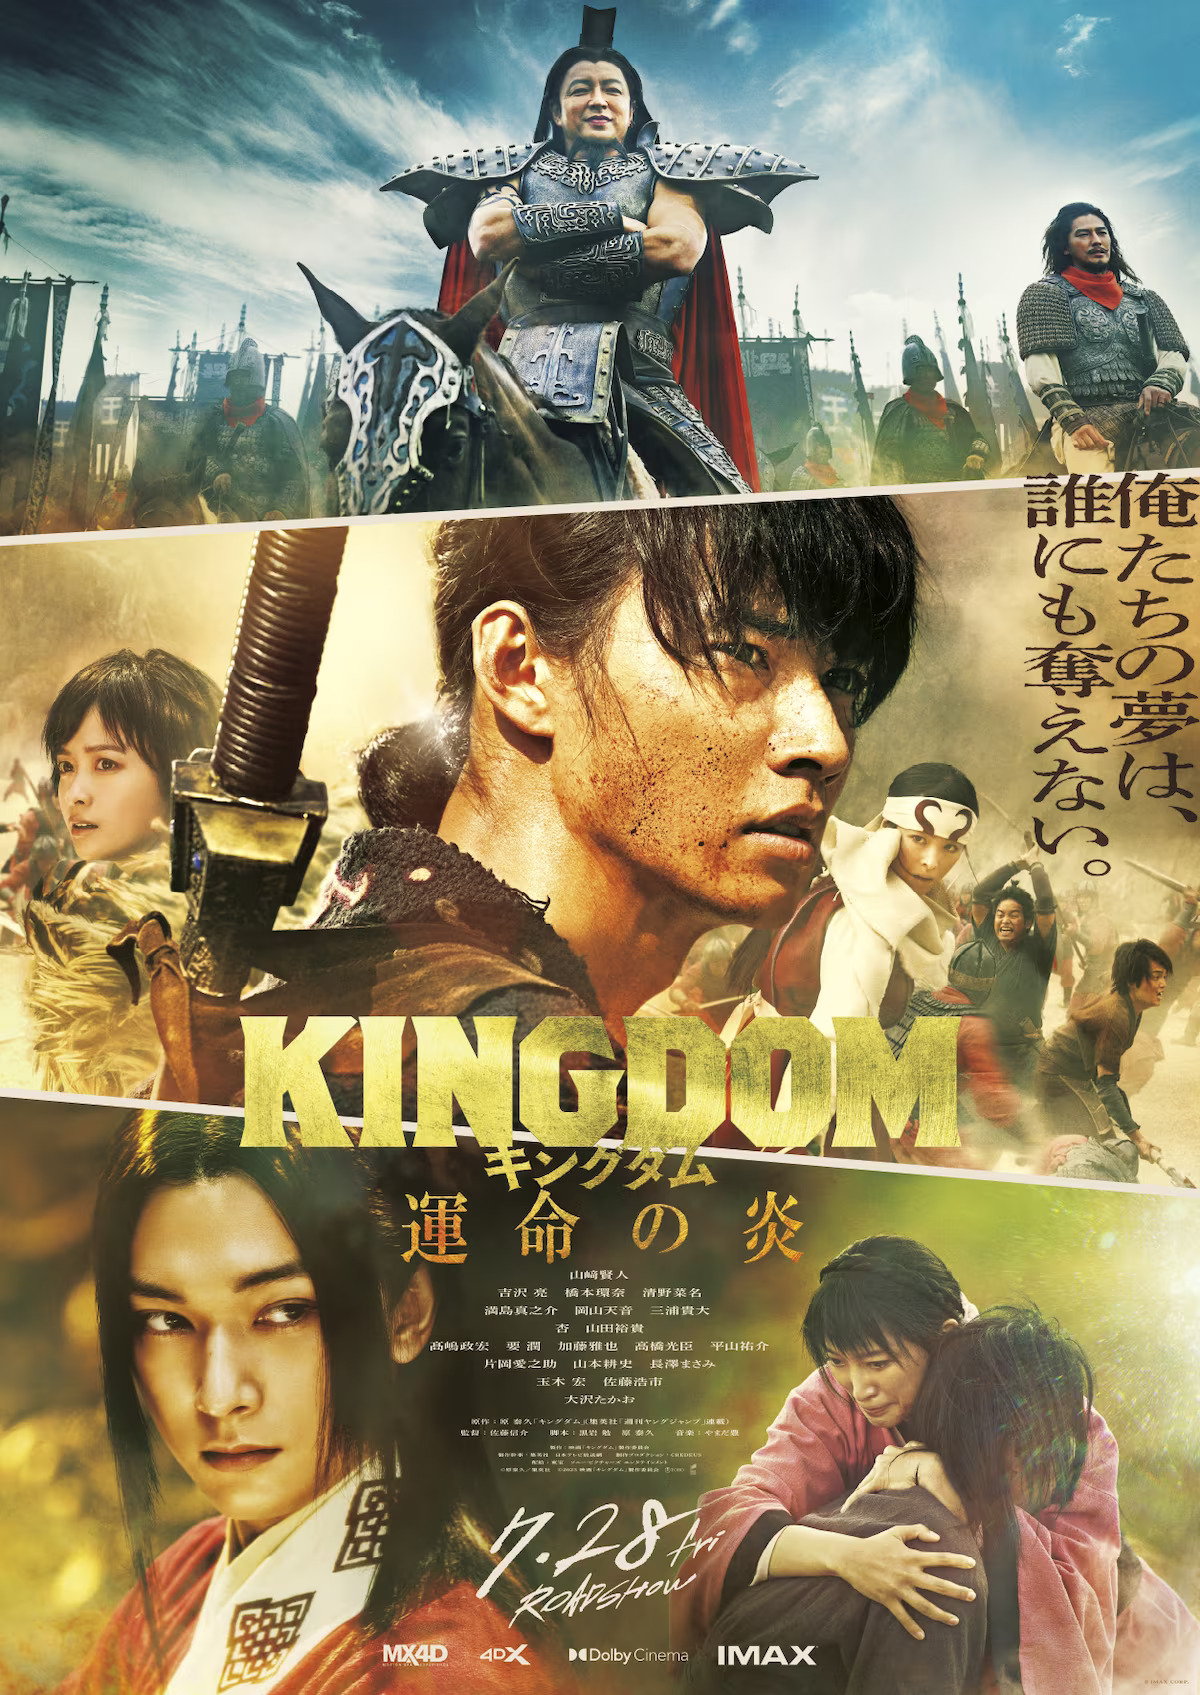 Gold Kingdom, Water Kingdom Anime Film Adds to Cast